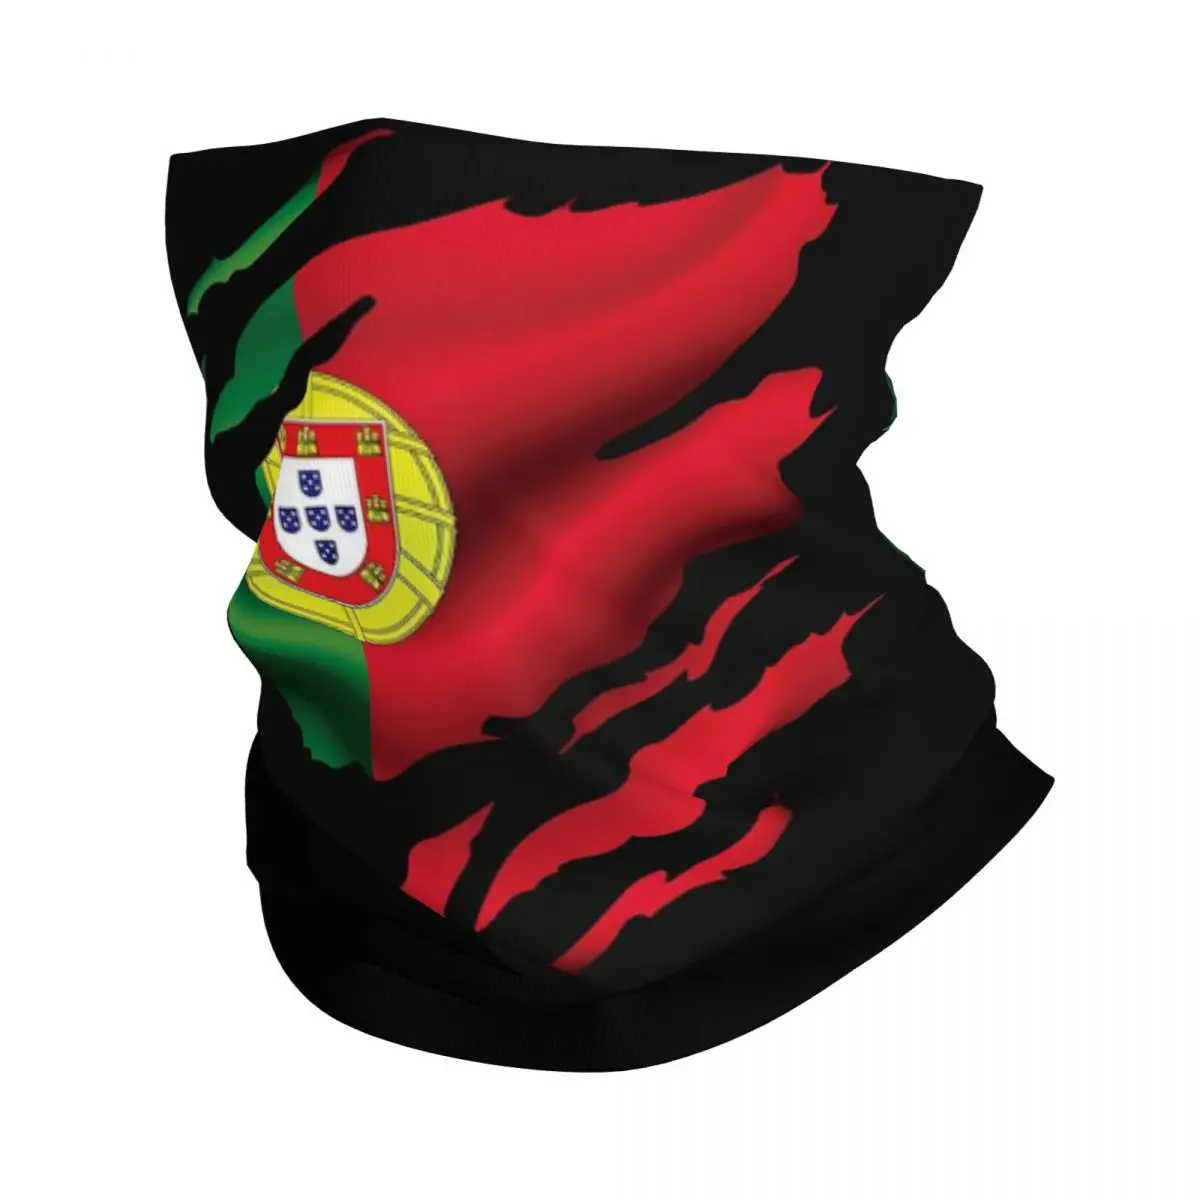 

Бандана с флагом Португалии, накидка на шею, шарф-маска с принтом, многофункциональная повязка на голову для занятий спортом на открытом воздухе, унисекс, для взрослых, для зимы